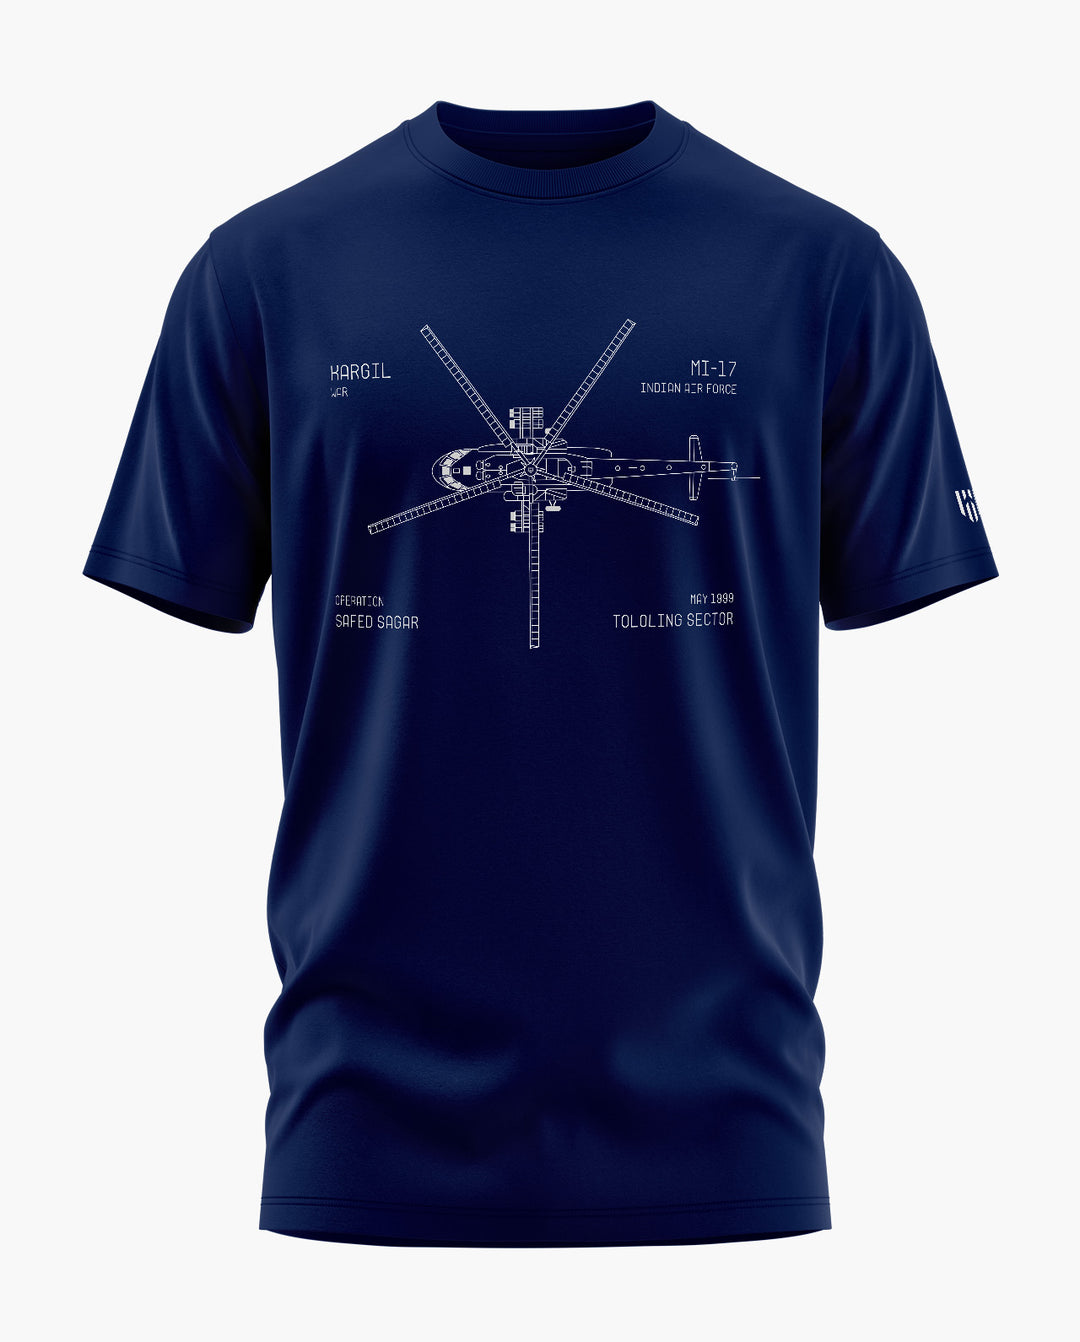 Mi-17 Kargil T-Shirt